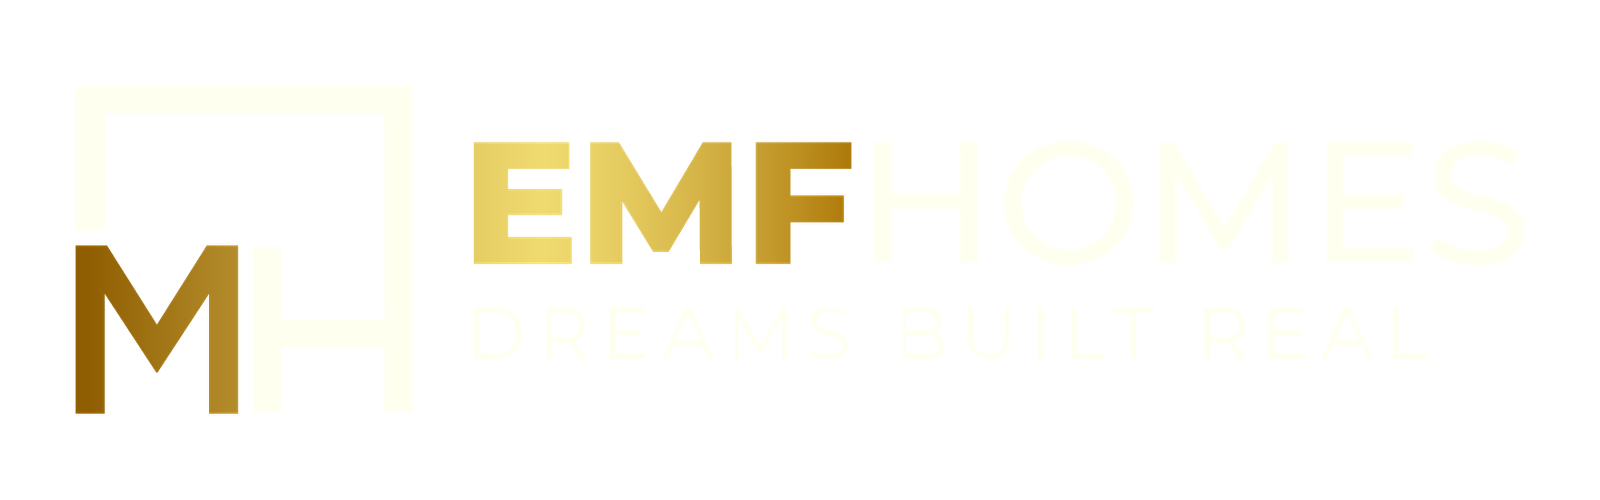 emfhomes.com